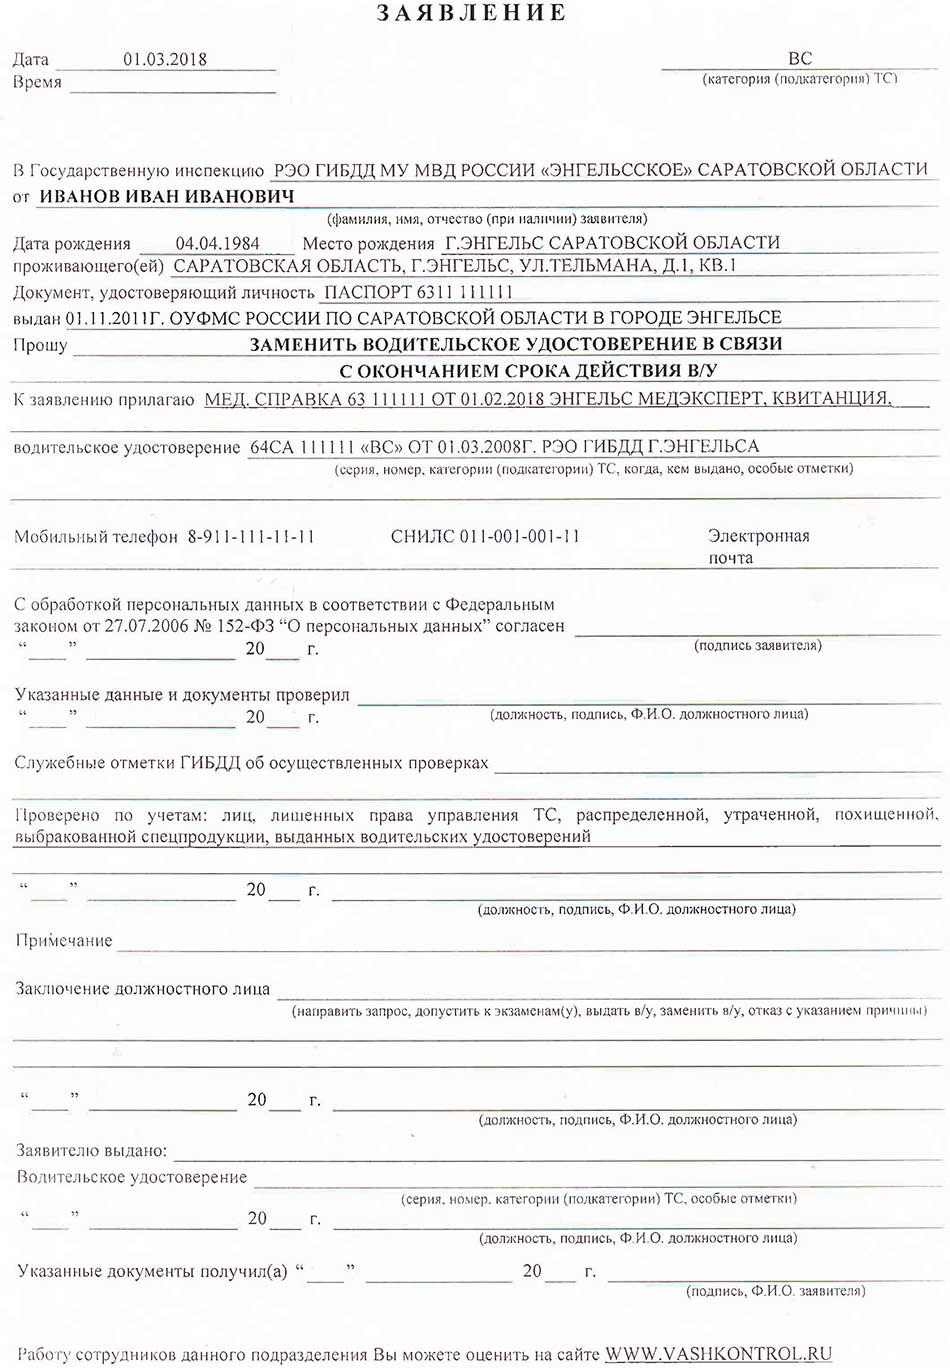 Перечень документов и бланк заявления для получения водительских прав